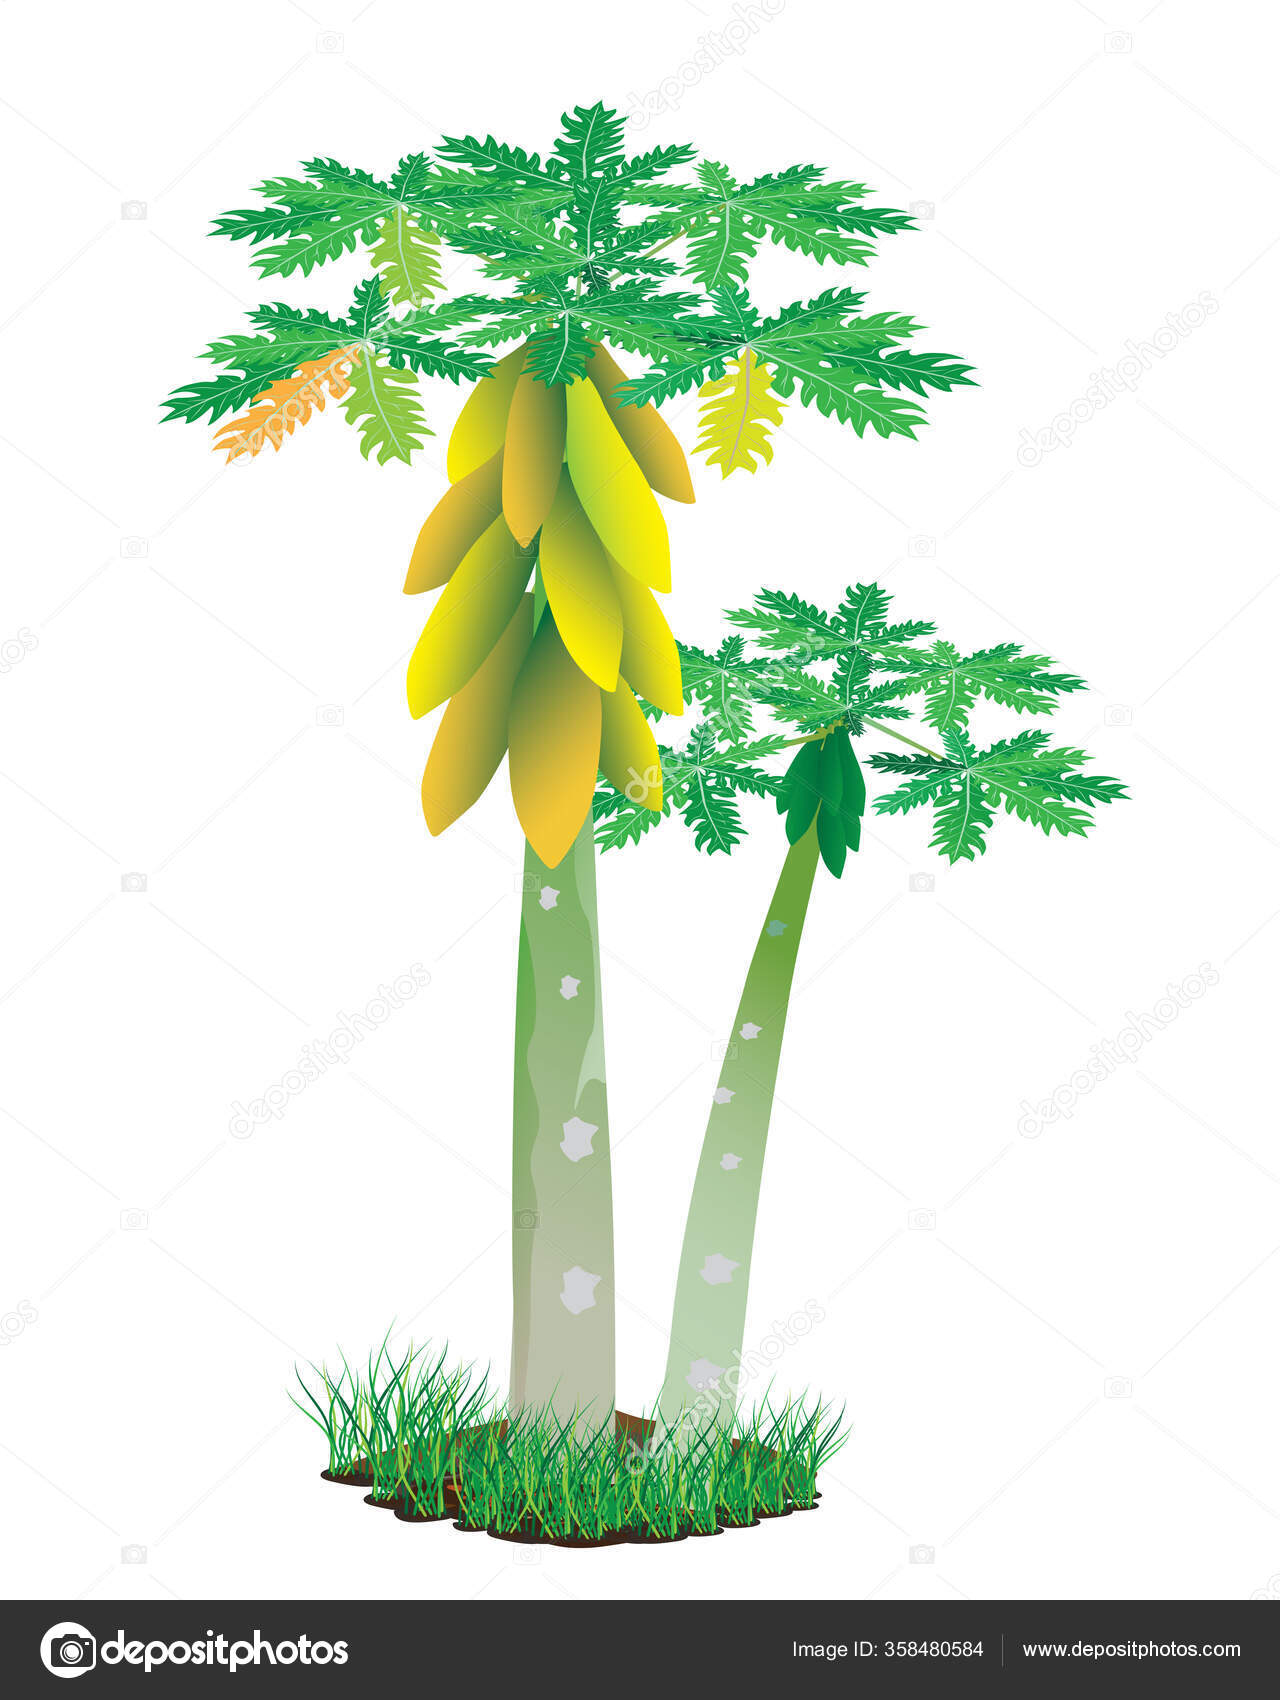 Papaya tree Vector Art Stock Images | Depositphotos